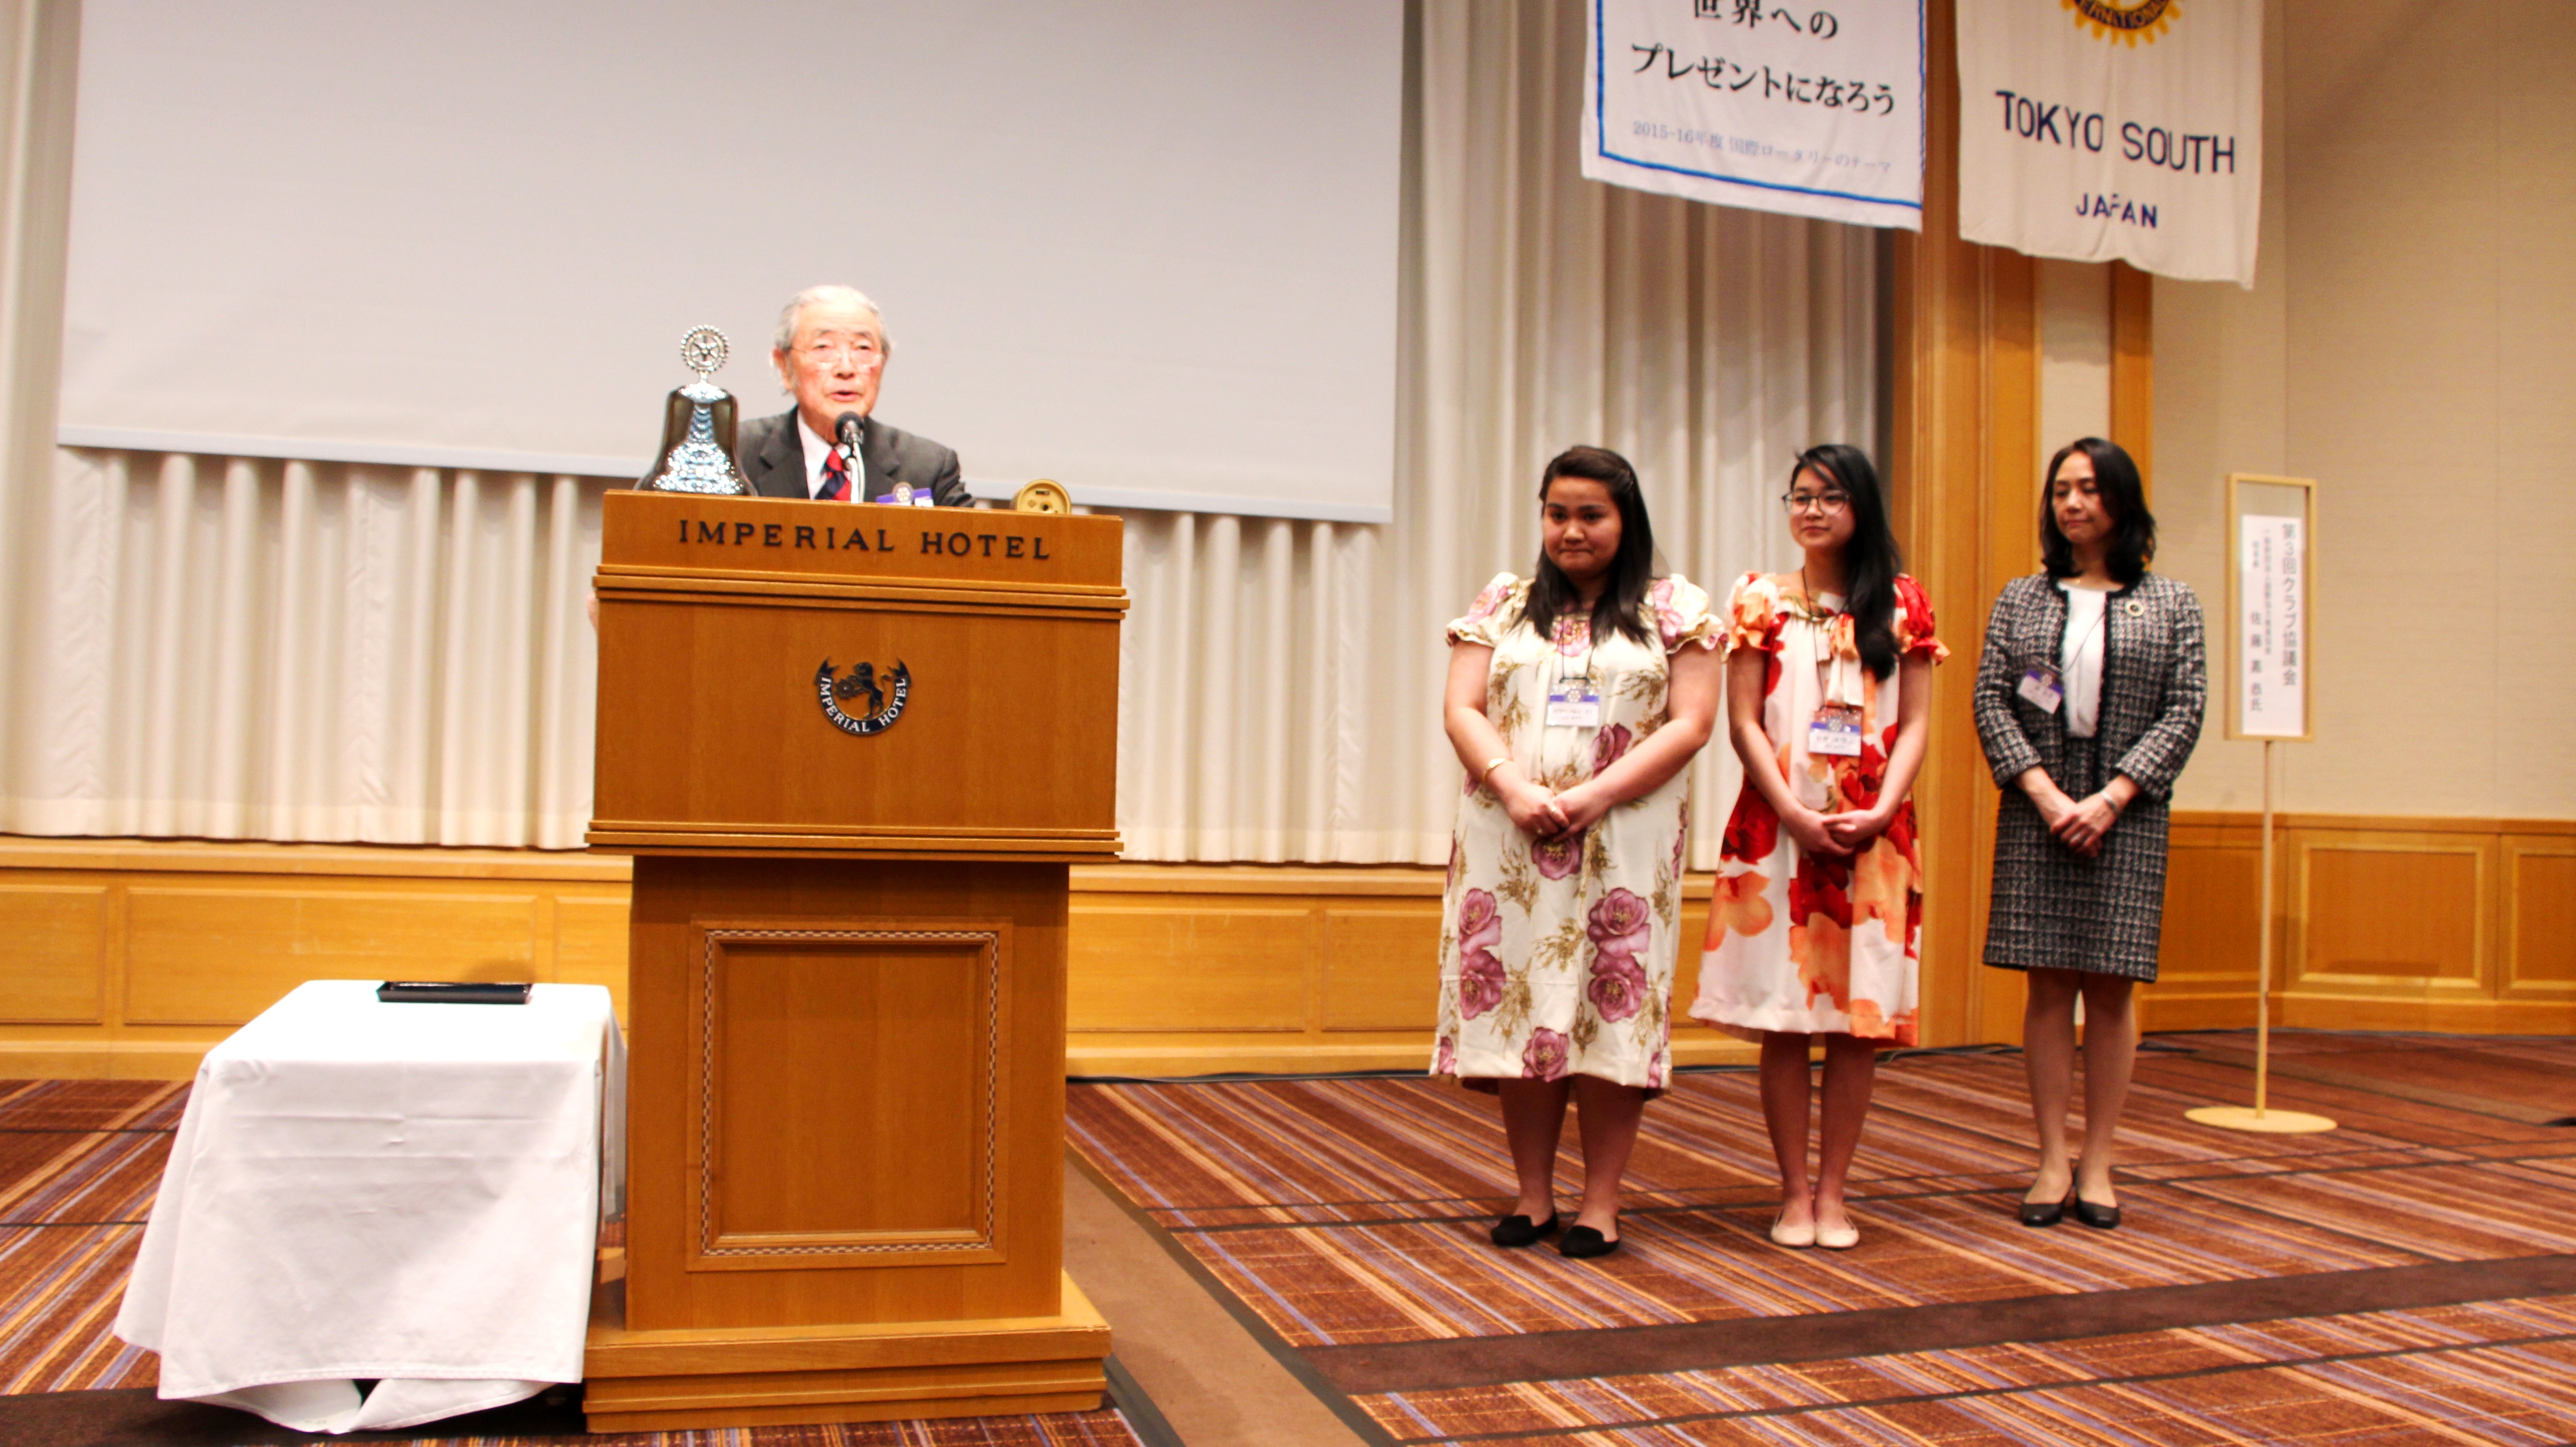 ザビエル奨学生2名が東京南ロータリークラブ定例会にて感謝のスピーチ